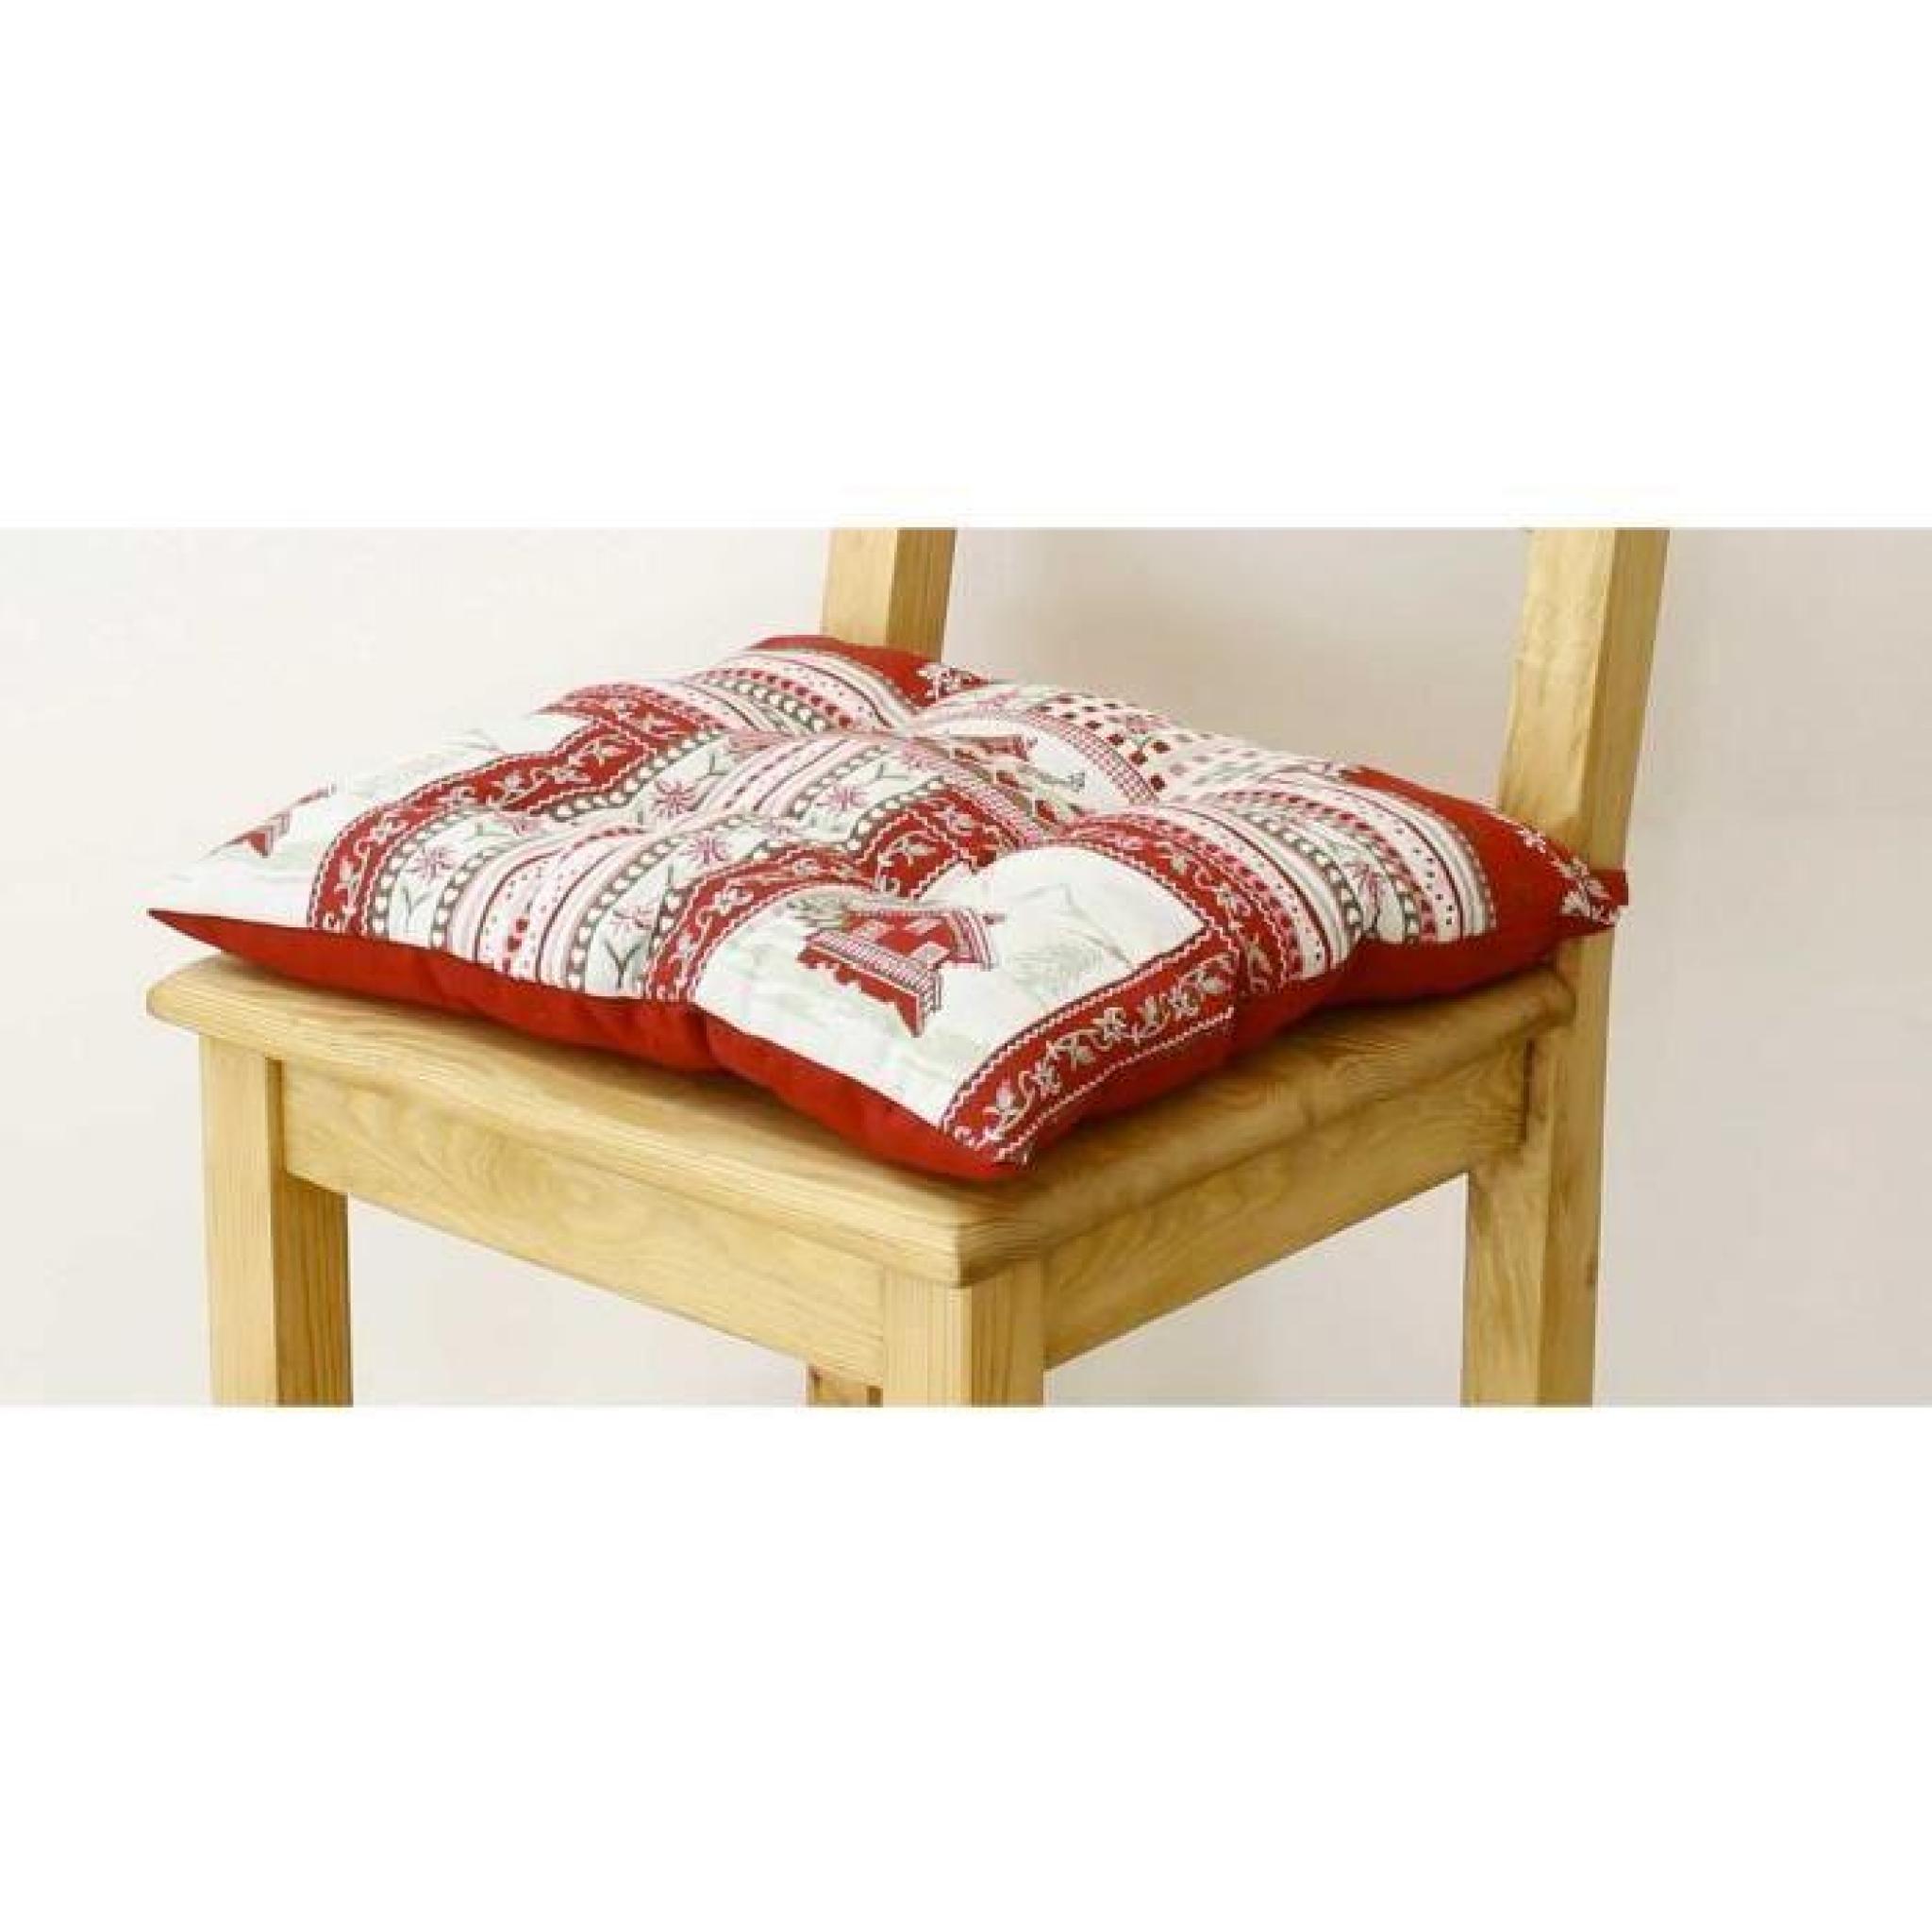 Galette de chaise style montagne Vanoise blanc rouge Aspin pas cher